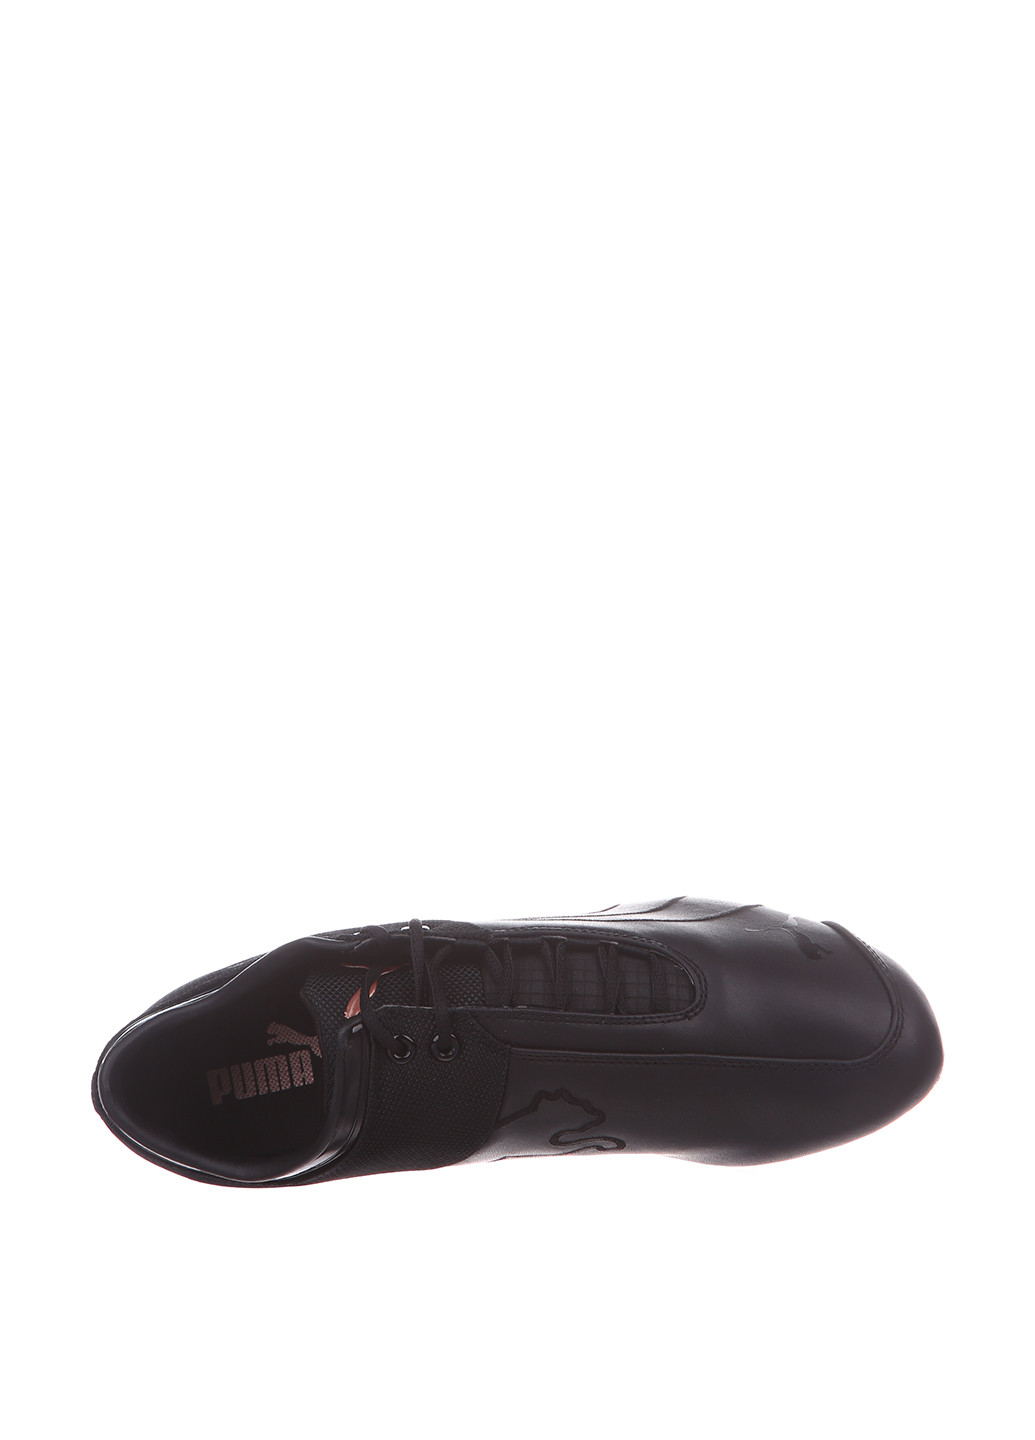 Черные демисезонные кроссовки Puma Future Cat M1 Citi